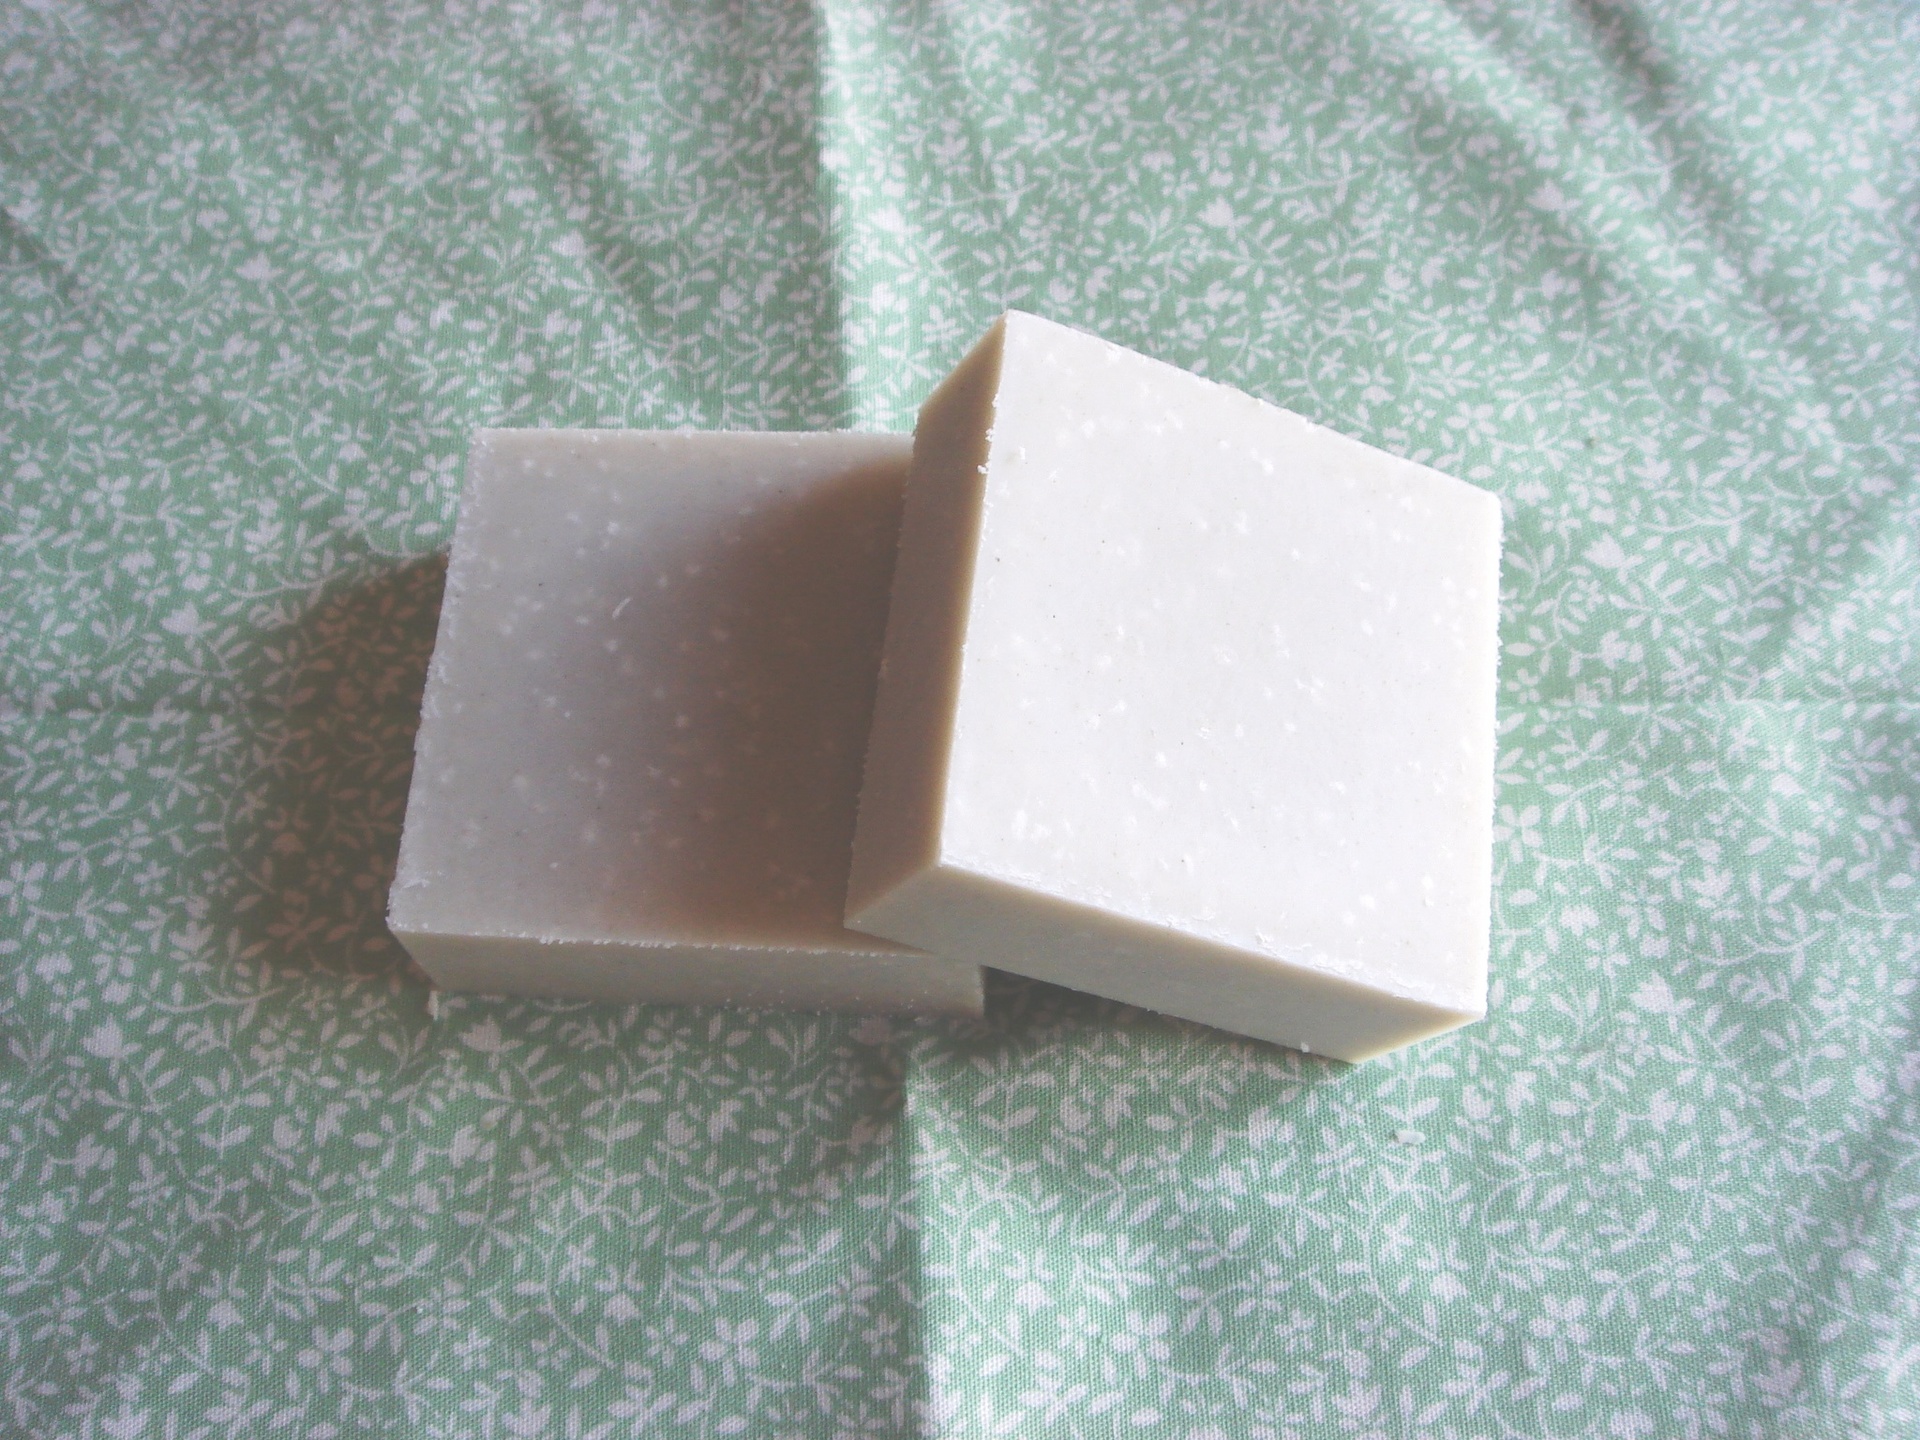 手作り石けんの作り方 アロマ石鹸の作り方 日記 トラブル肌のための石けんの作り方 クレイを入れて効果up